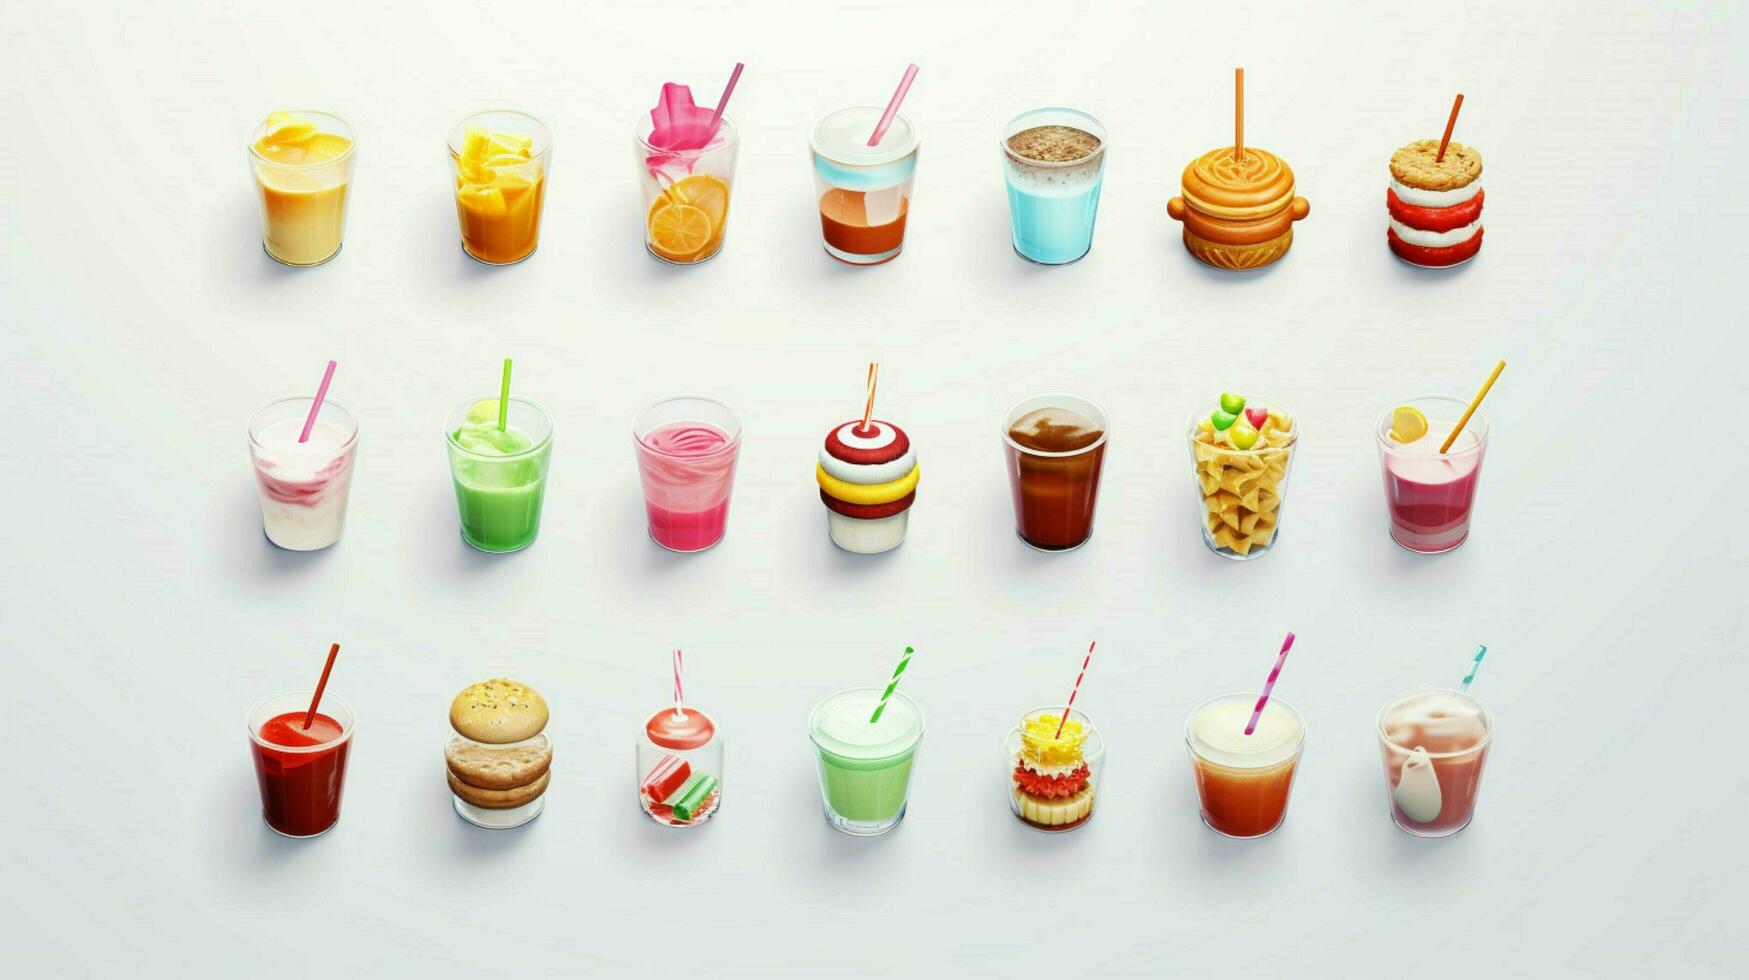 coloré 3d icône ensembles de nourriture et boisson indust photo